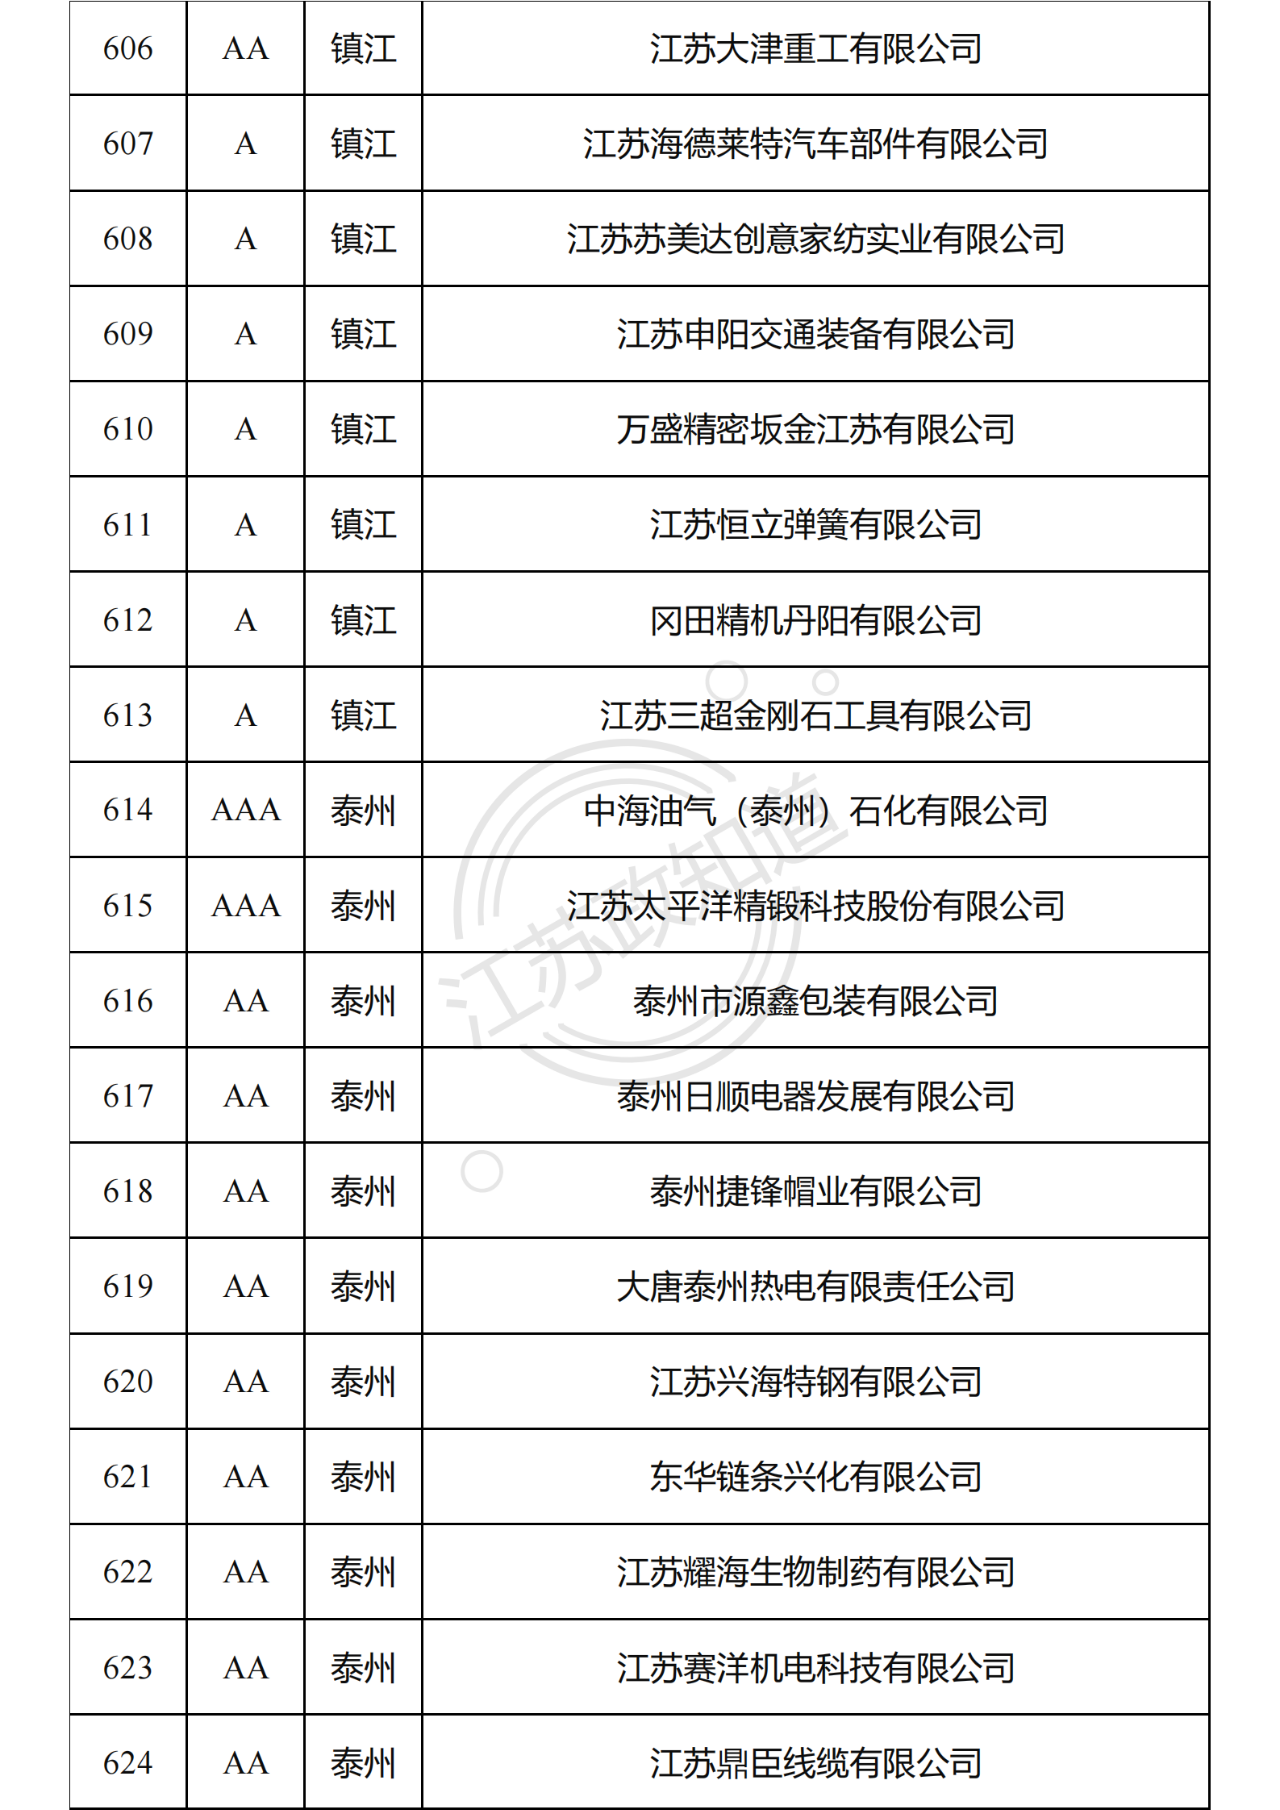 2022年度江苏省两化融合管理体系贯标试点企业培育对象拟认定名单34.png